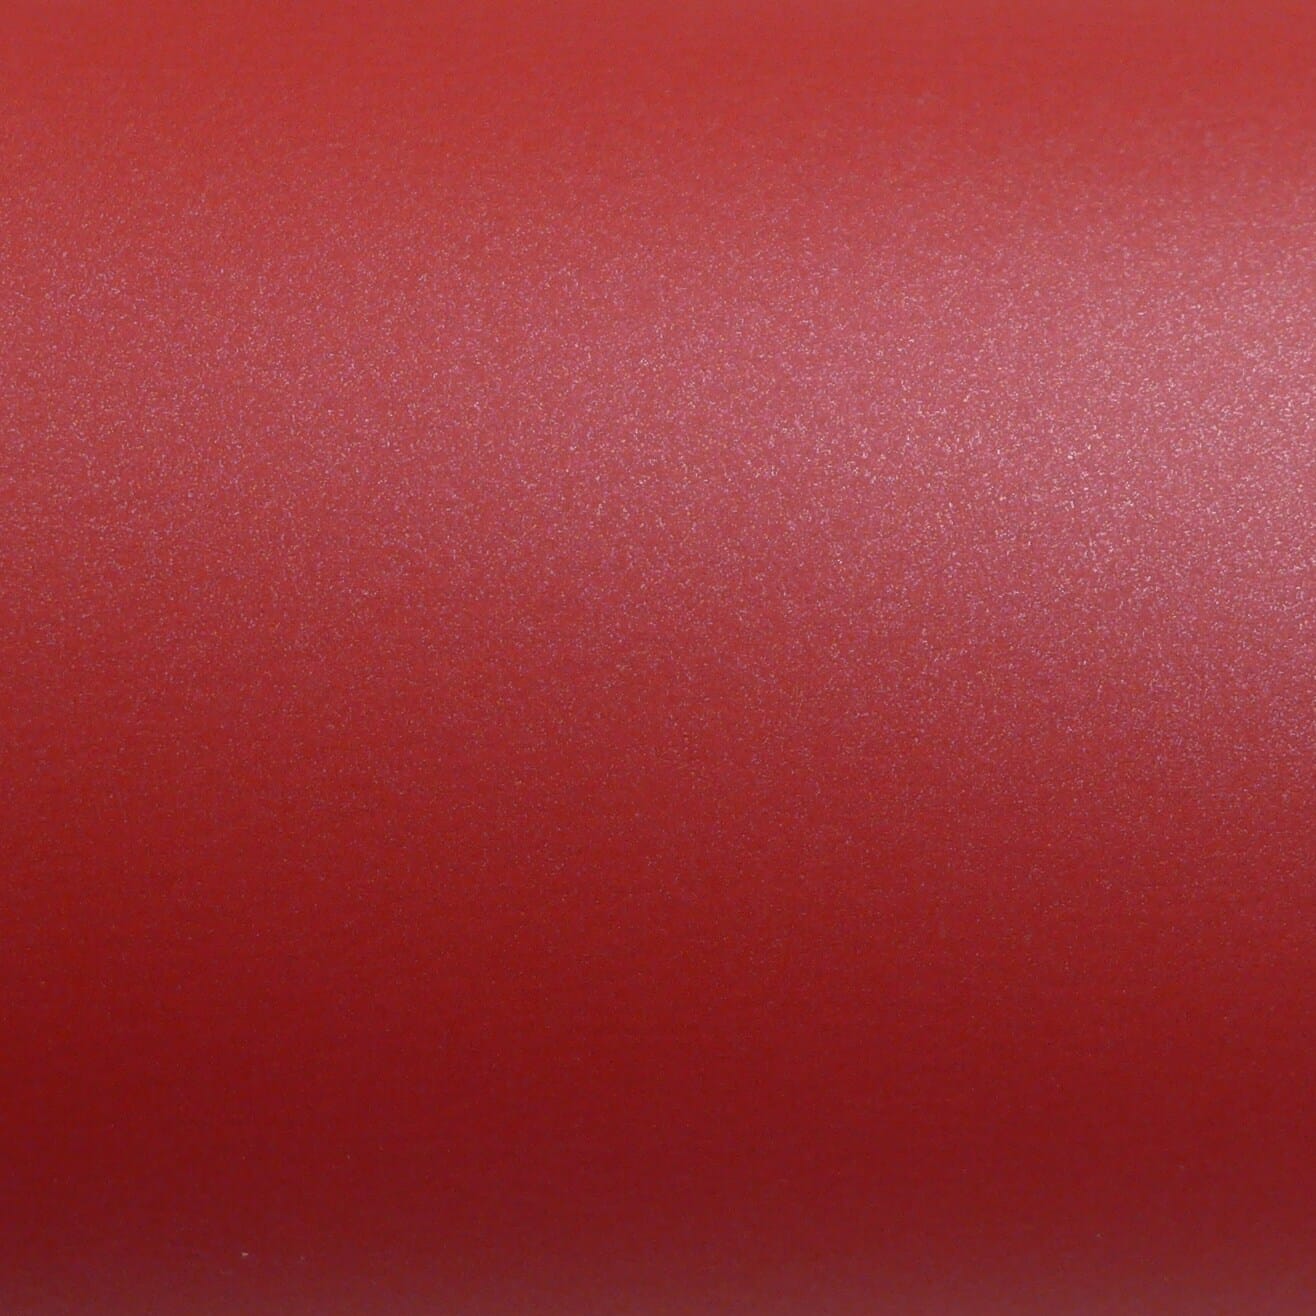 Vinilo rojo mate metalizado 3M 2080 M203